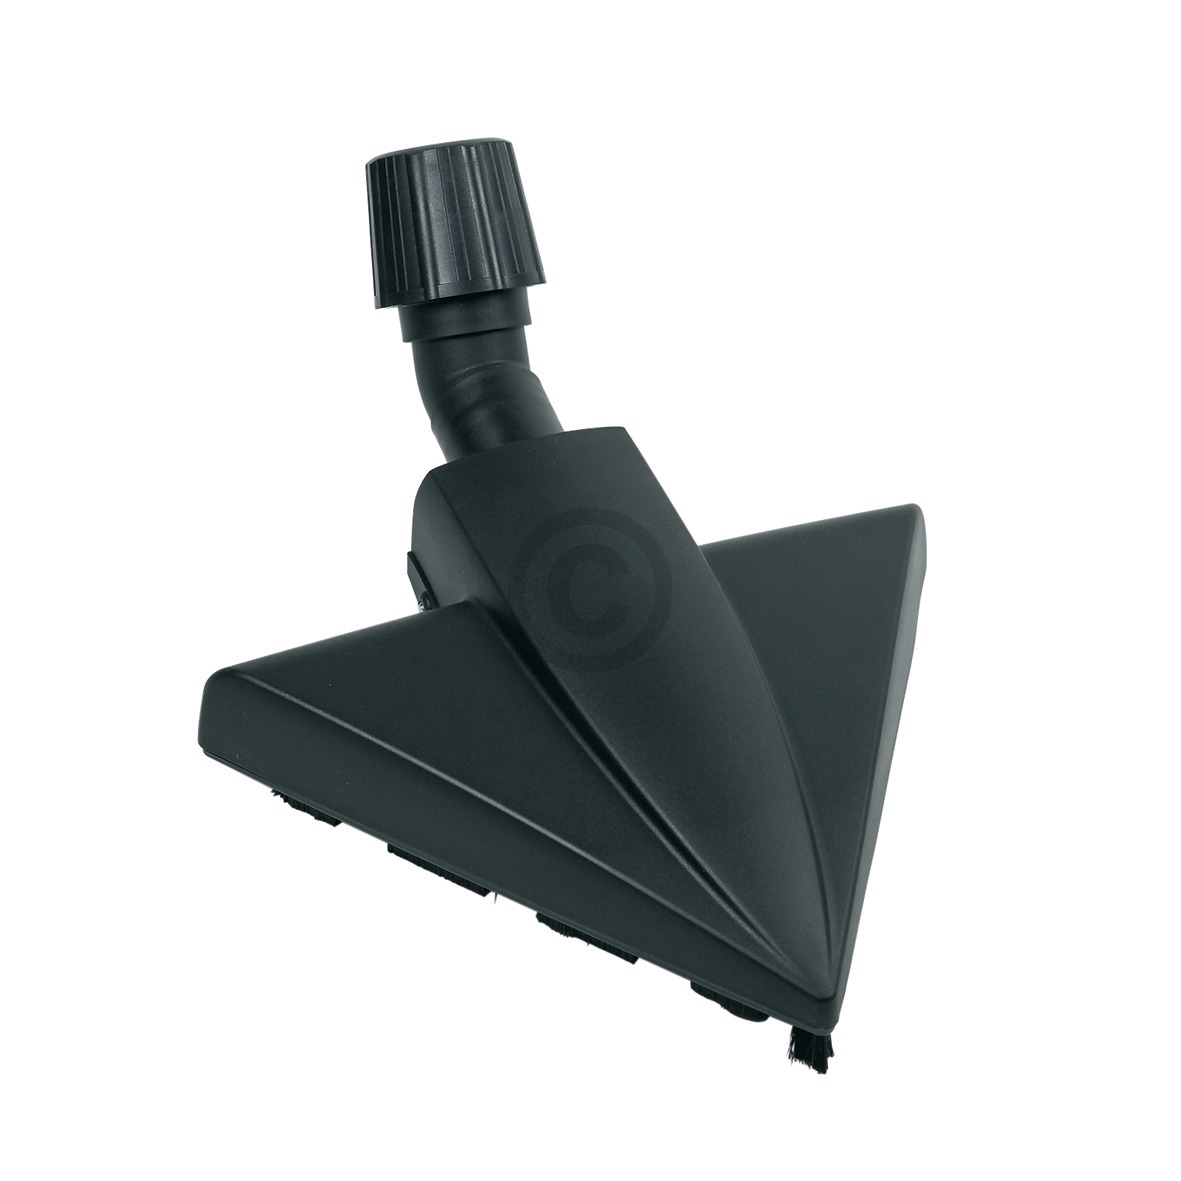 Bodendüse Dreieck Universal für 34-36mm Rohr-Ø Staubsauger